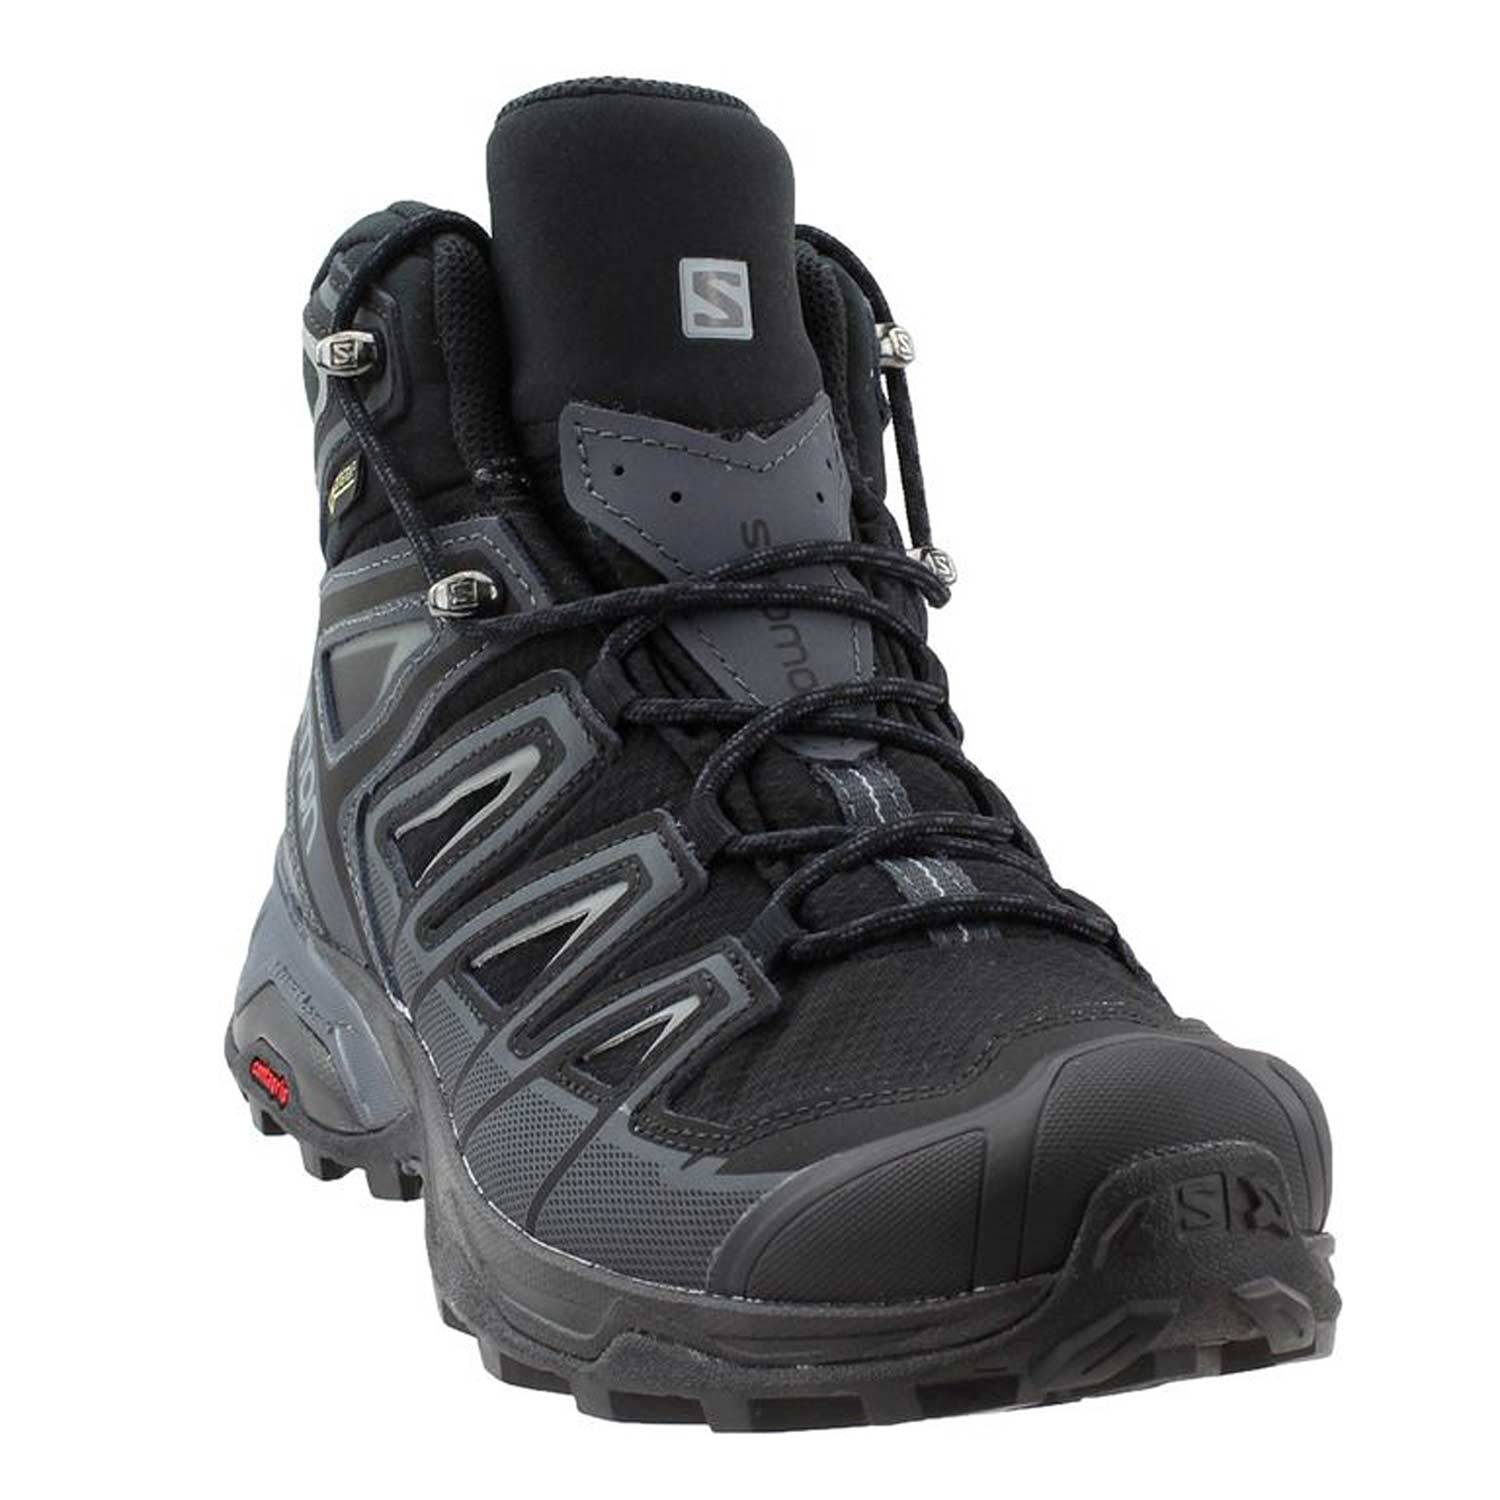 salomon x ultra 3 mid gtx hiking boots